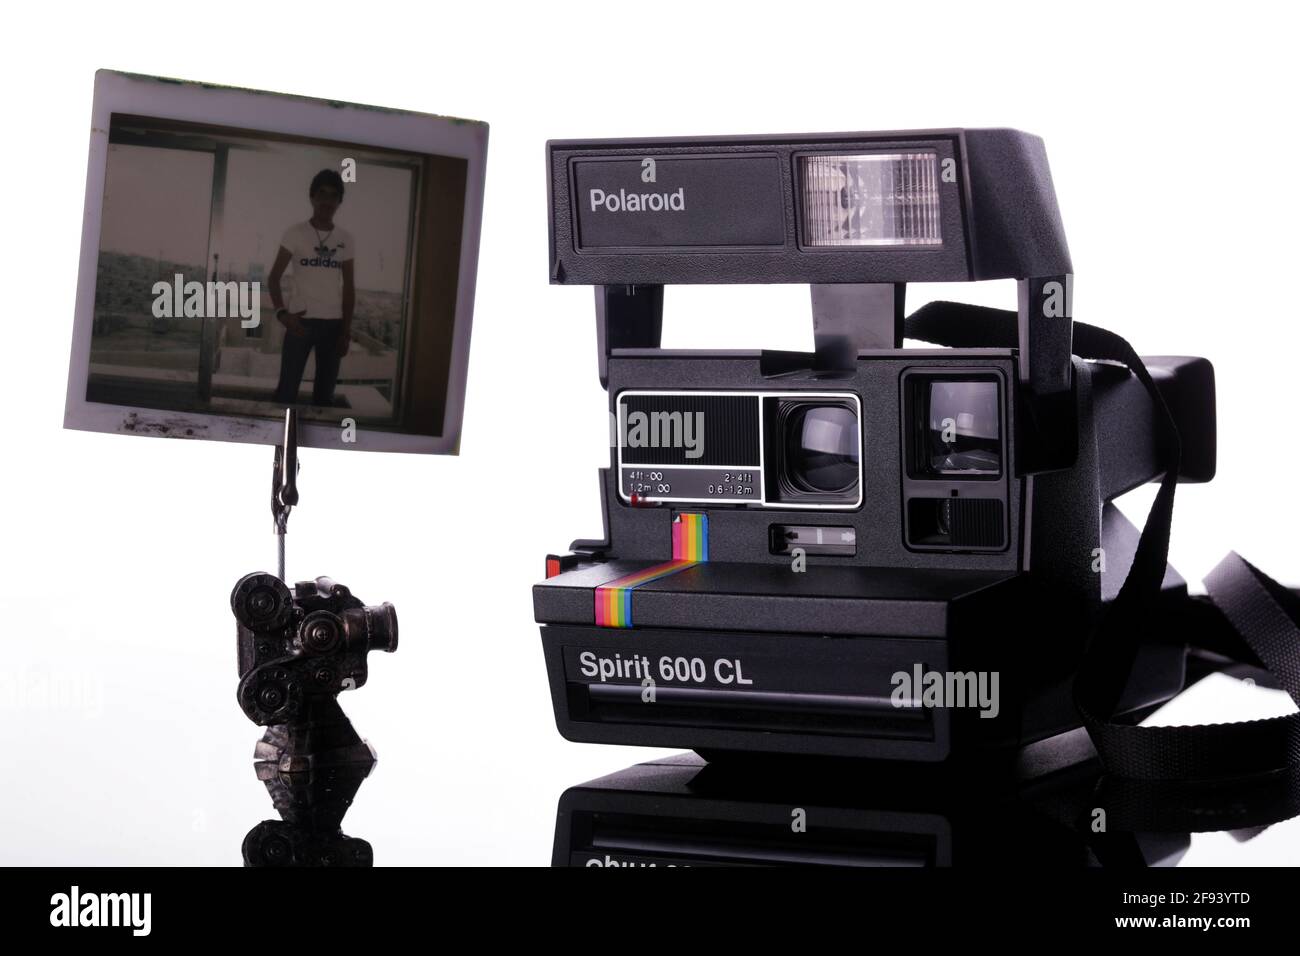 8 aprile 2021: Gaziantep, Turchia. Una telecamera Polaroid SX-70, prodotta  nel 1972. Polaroid è stata la prima azienda a creare la fotocamera  istantanea che ha creato una stampa sviluppata poco dopo aver